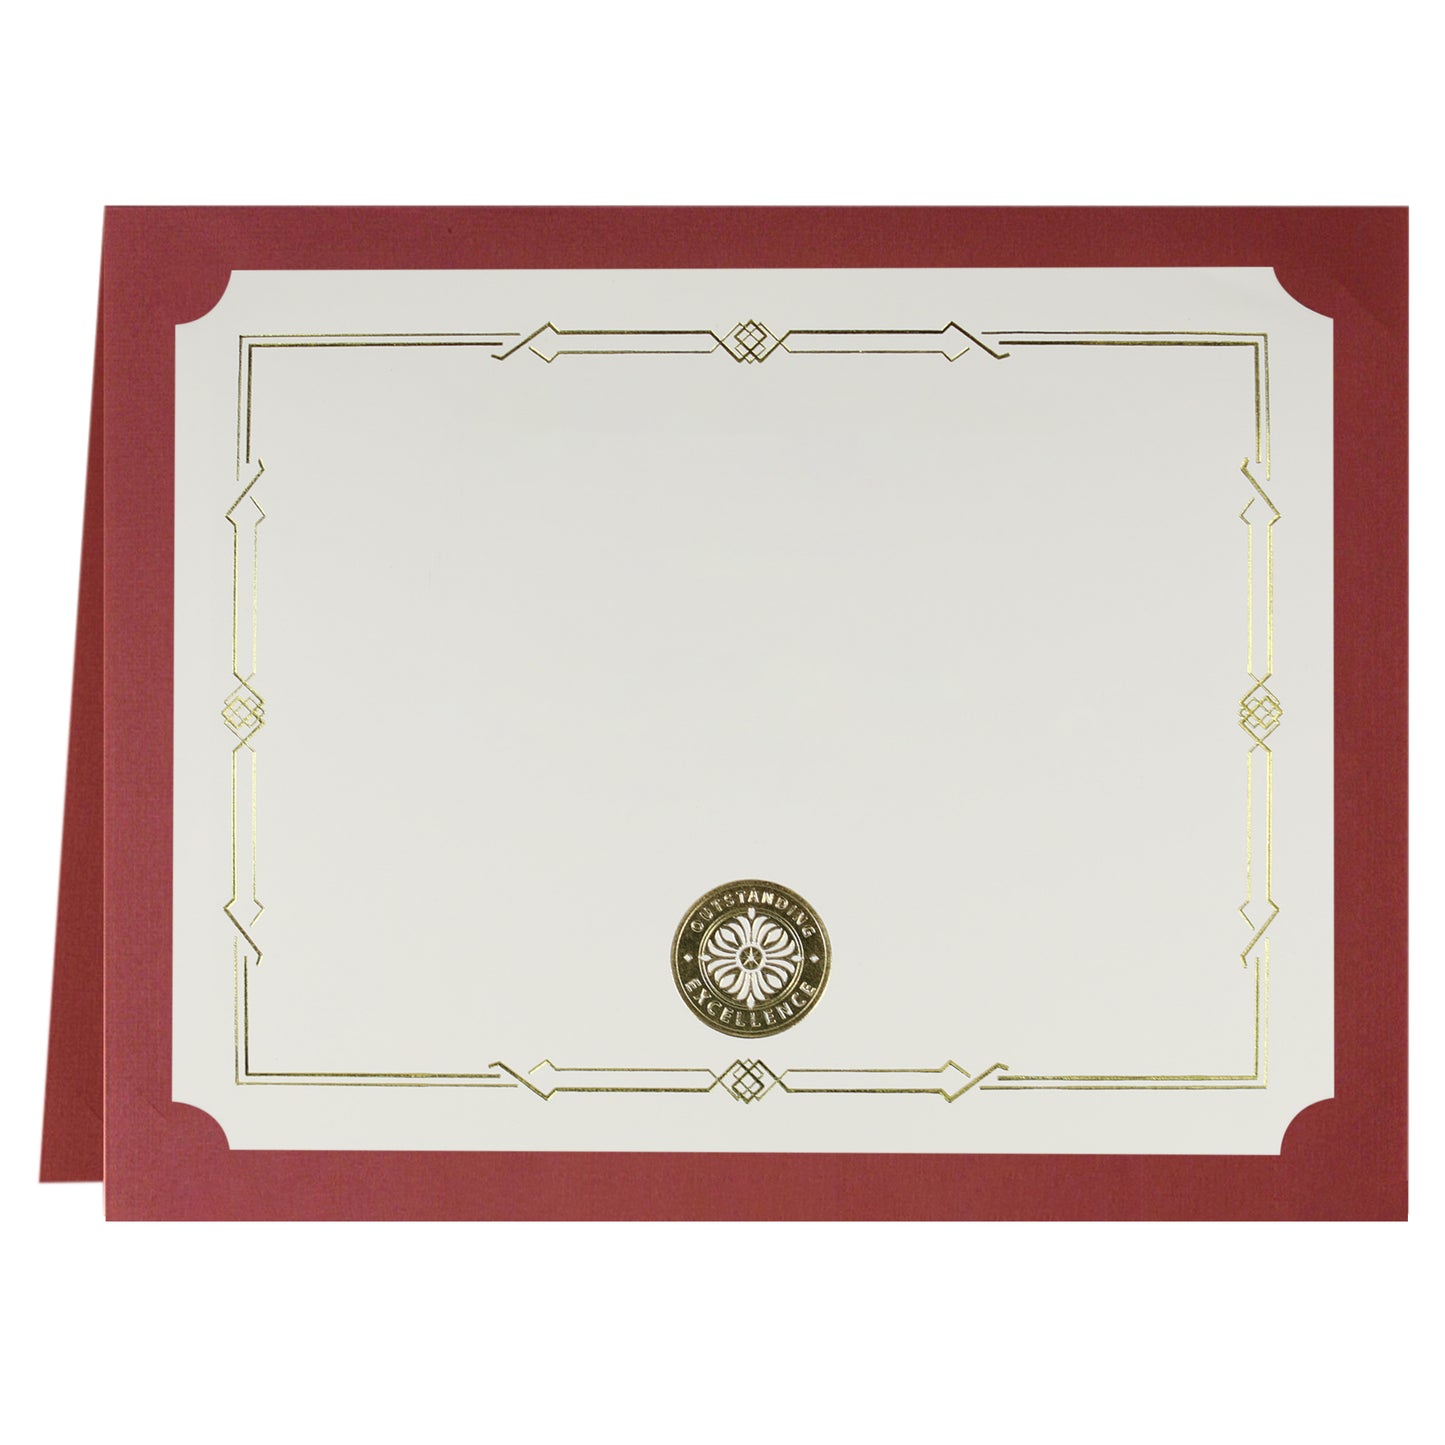 Porte-certificats/couvertures de documents/porte-diplômes St. James®, rouge, bordure en feuille d'or, finition lin, paquet de 5, 83807